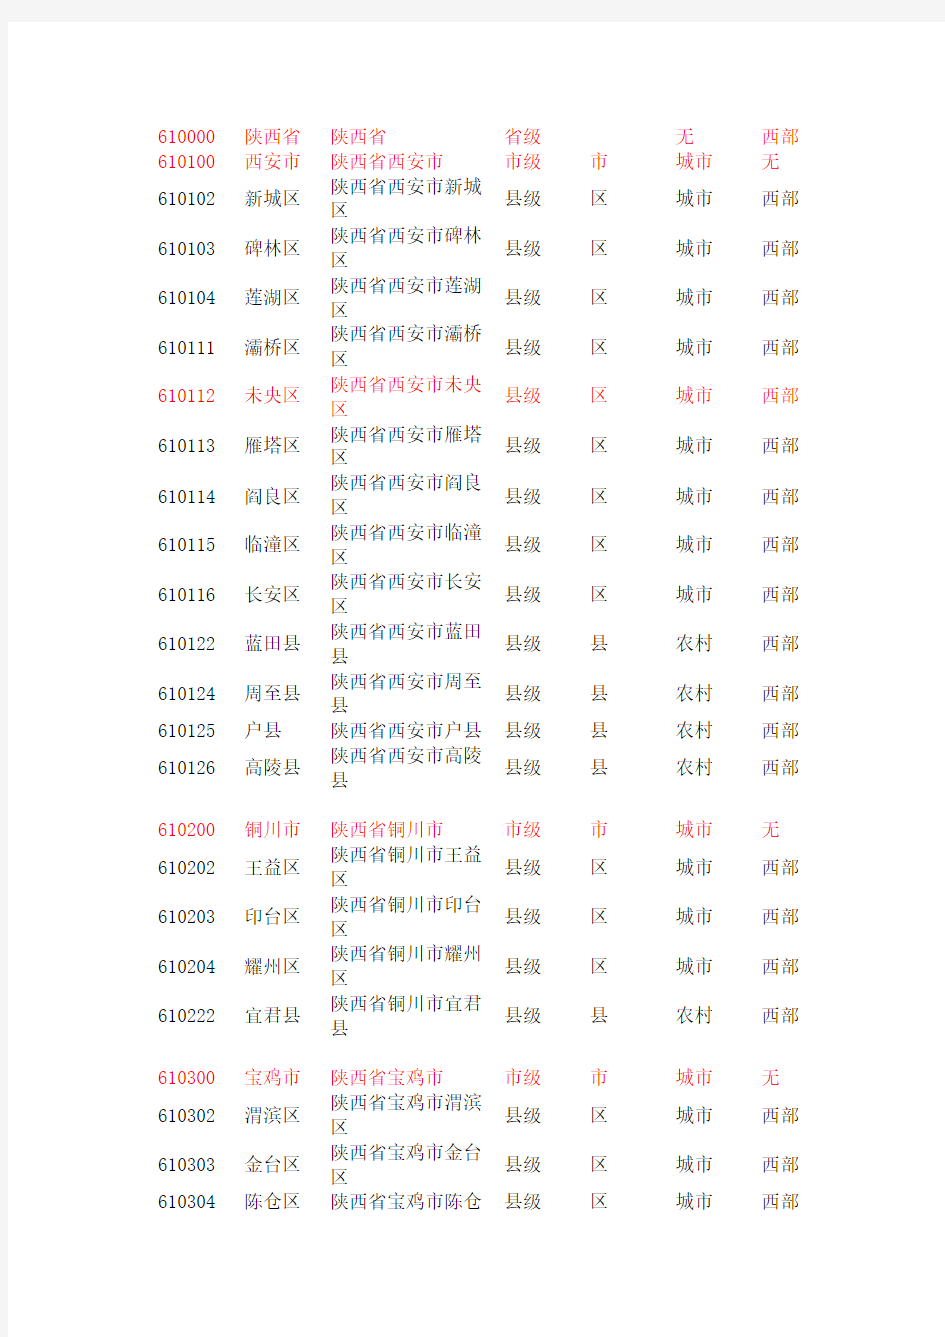 陕西省行政区划代码(107)